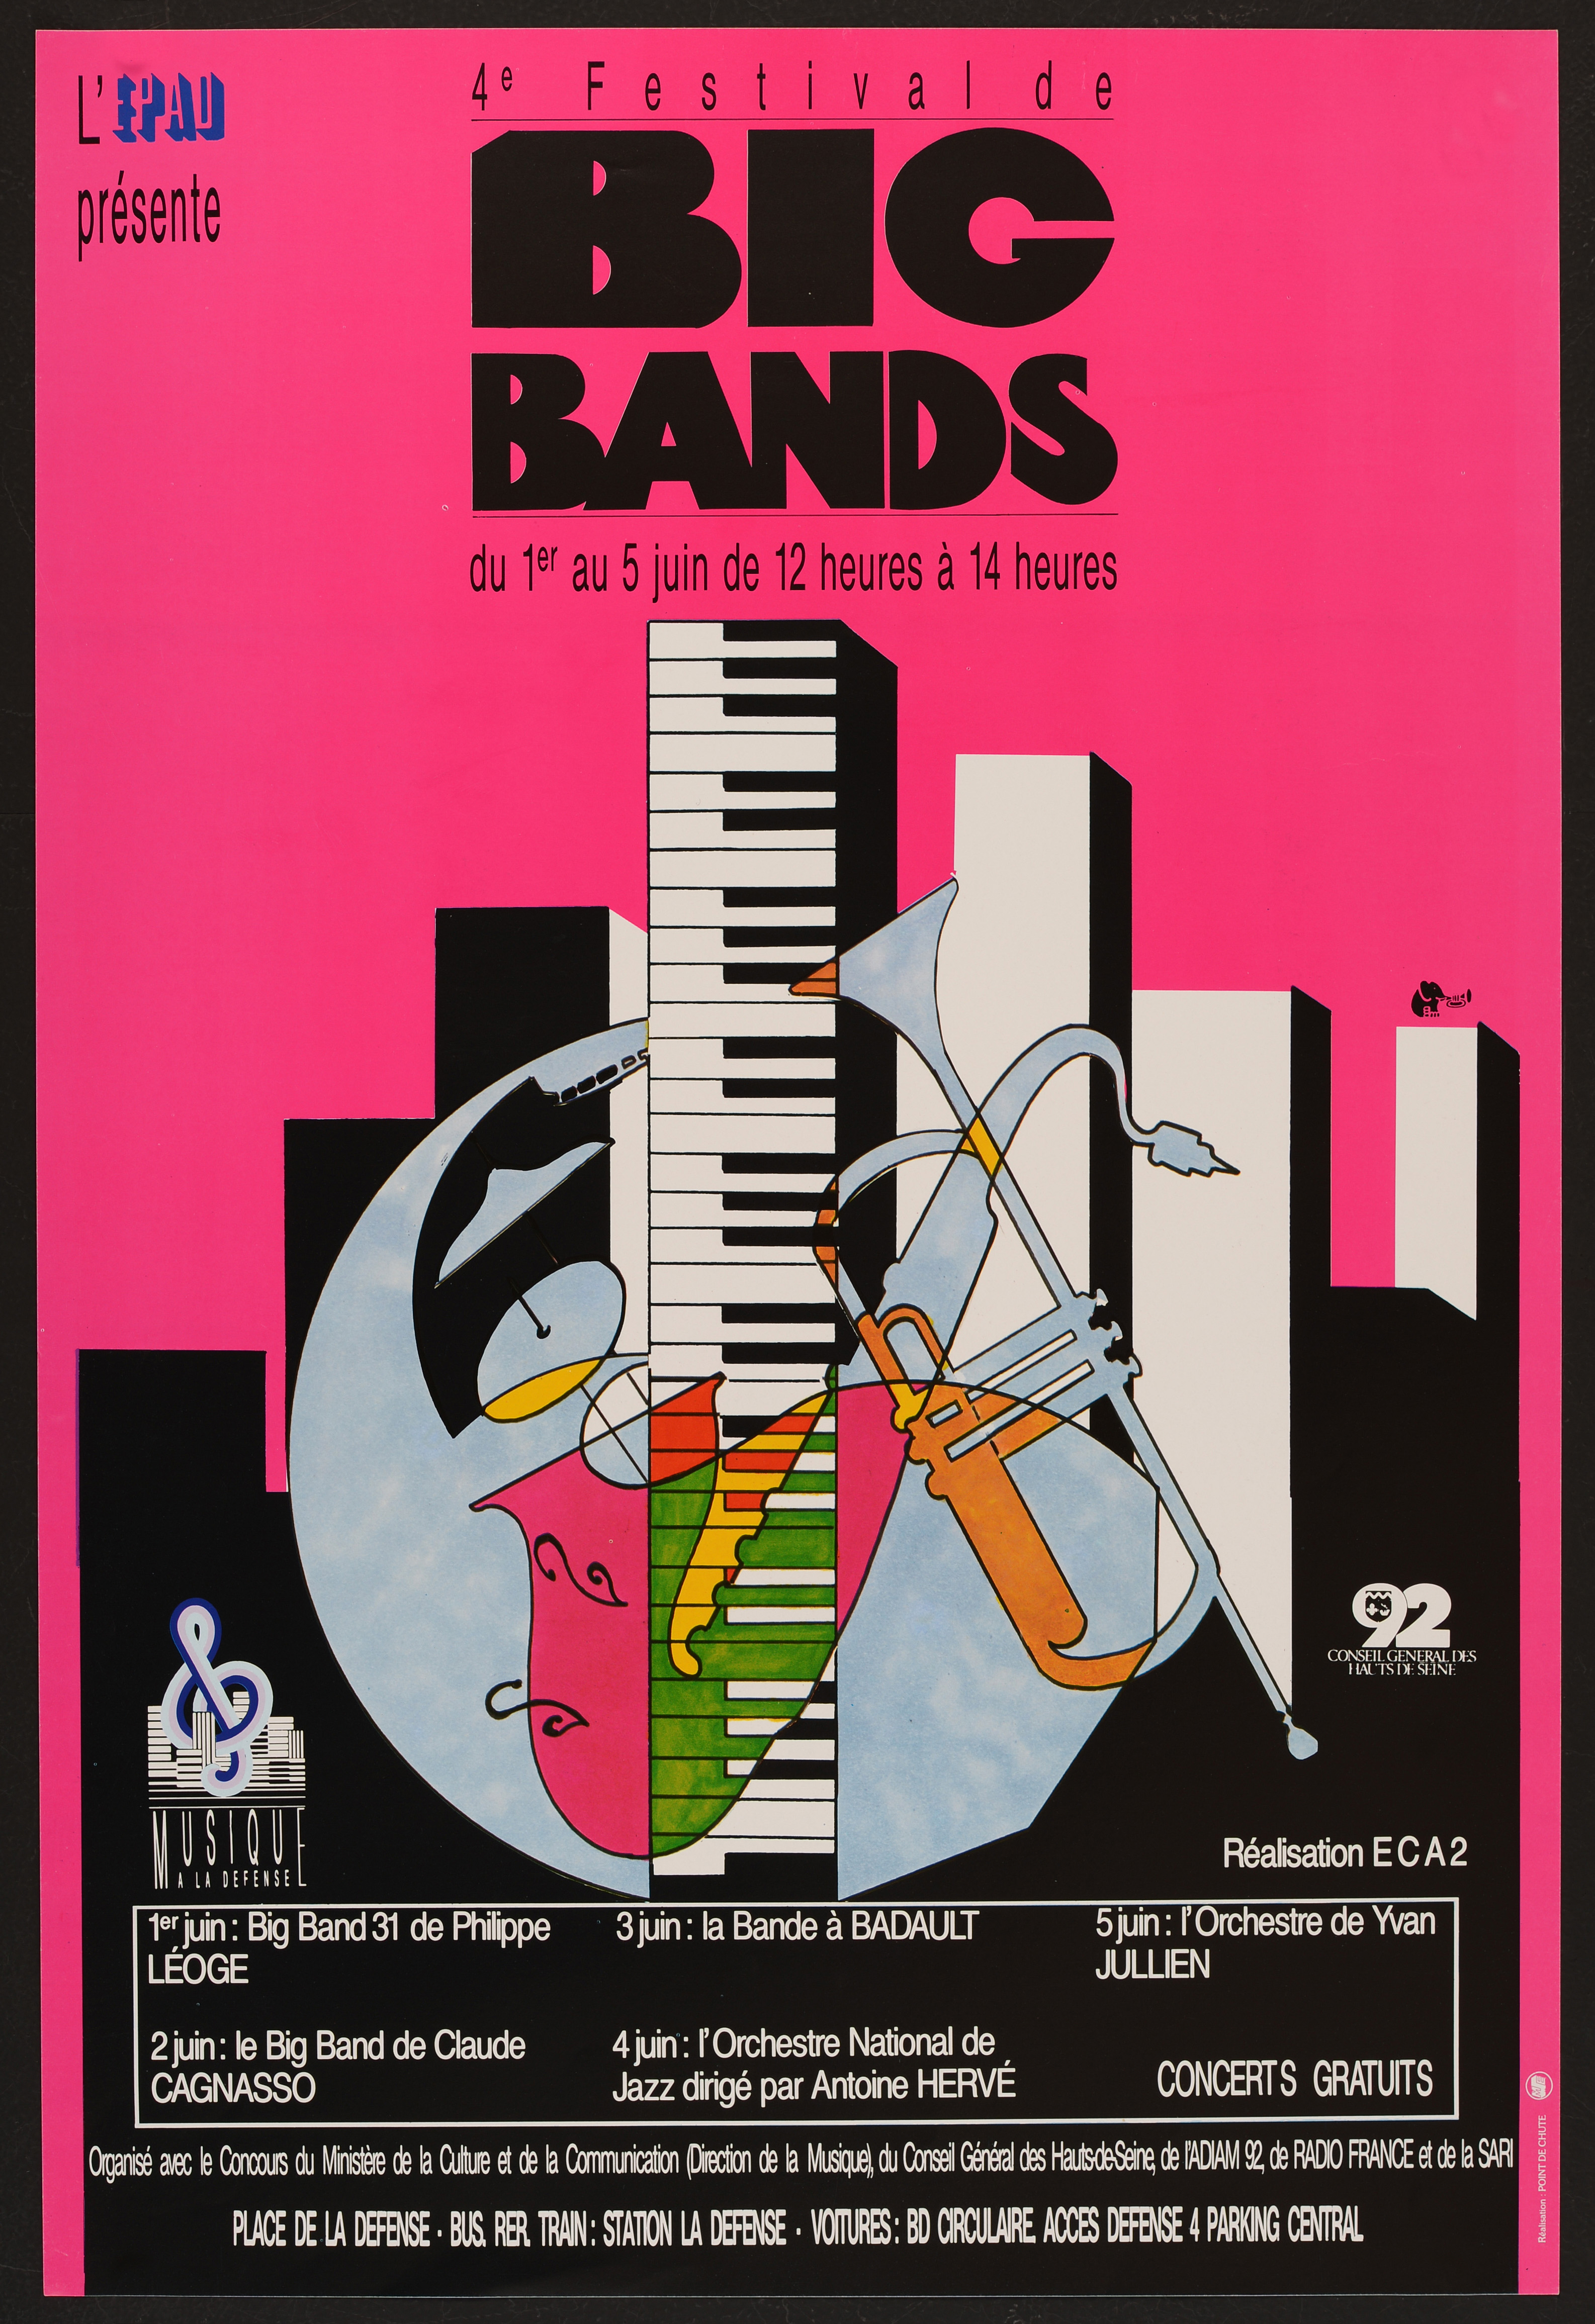 4ème Festival de Big Bands à la Défense. 1er au 5 juin 1987. - Affiche ill. coul. ; 60 x 40 cm.